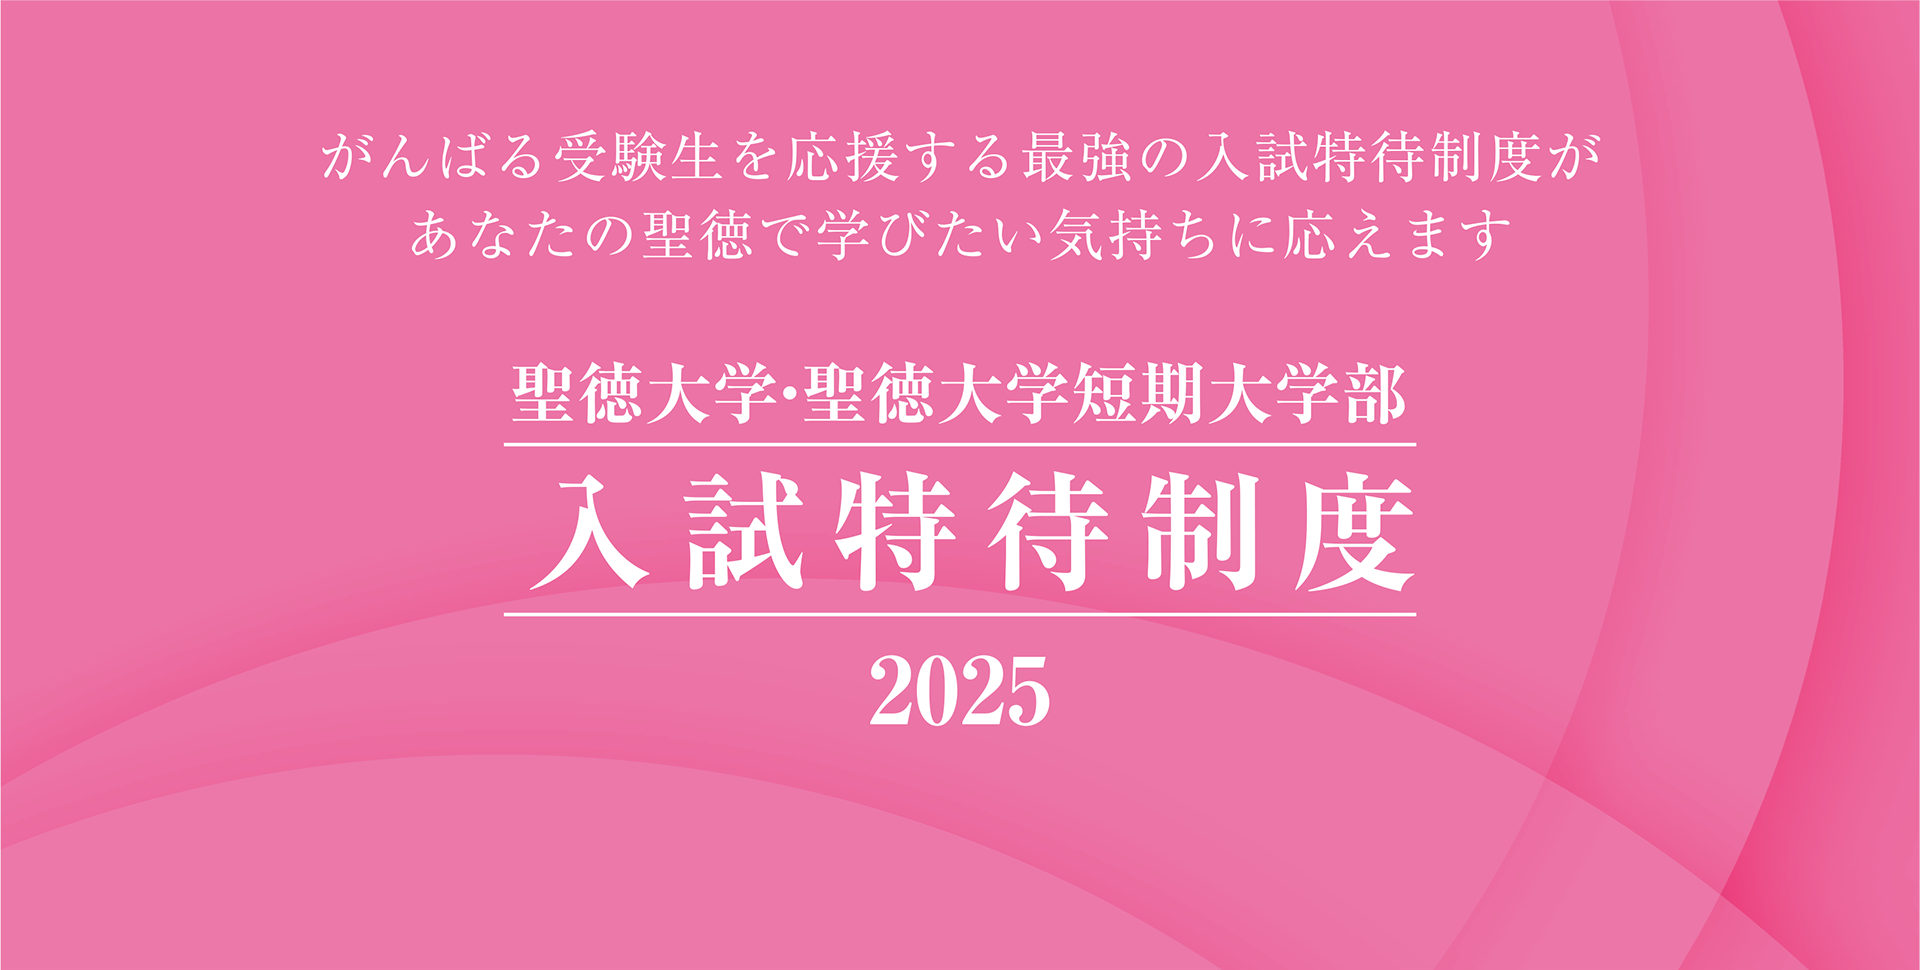 聖徳大学・聖徳大学短期大学部 入試特待制度 2025